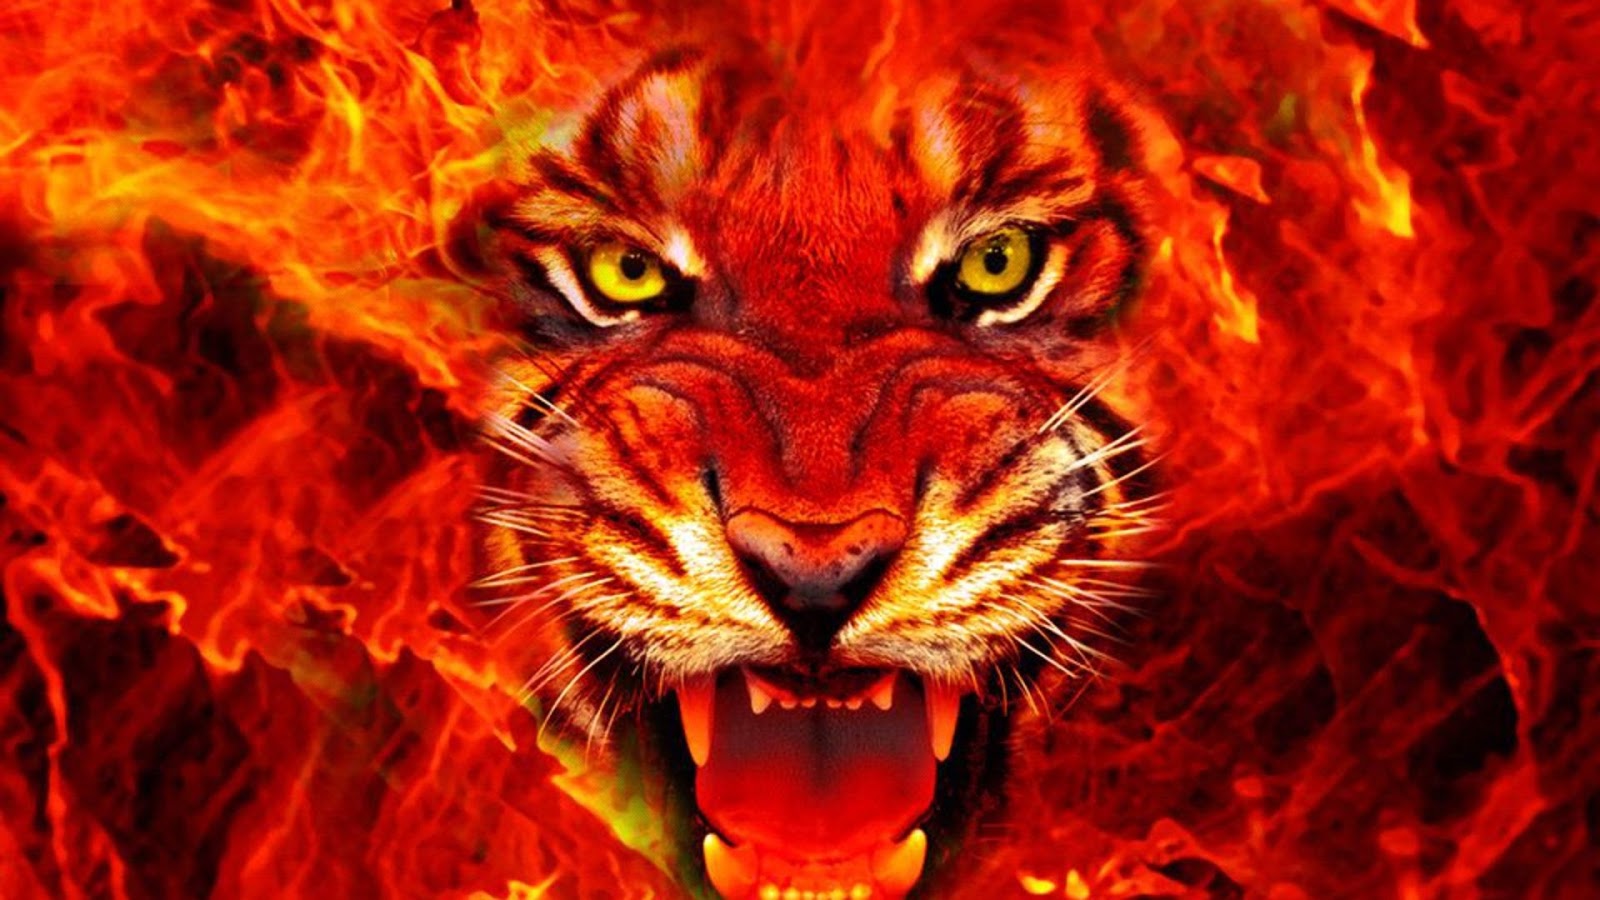 Hình nền sư tử đẹp nhất cho máy tính  Lion mane Lion king poster Lion